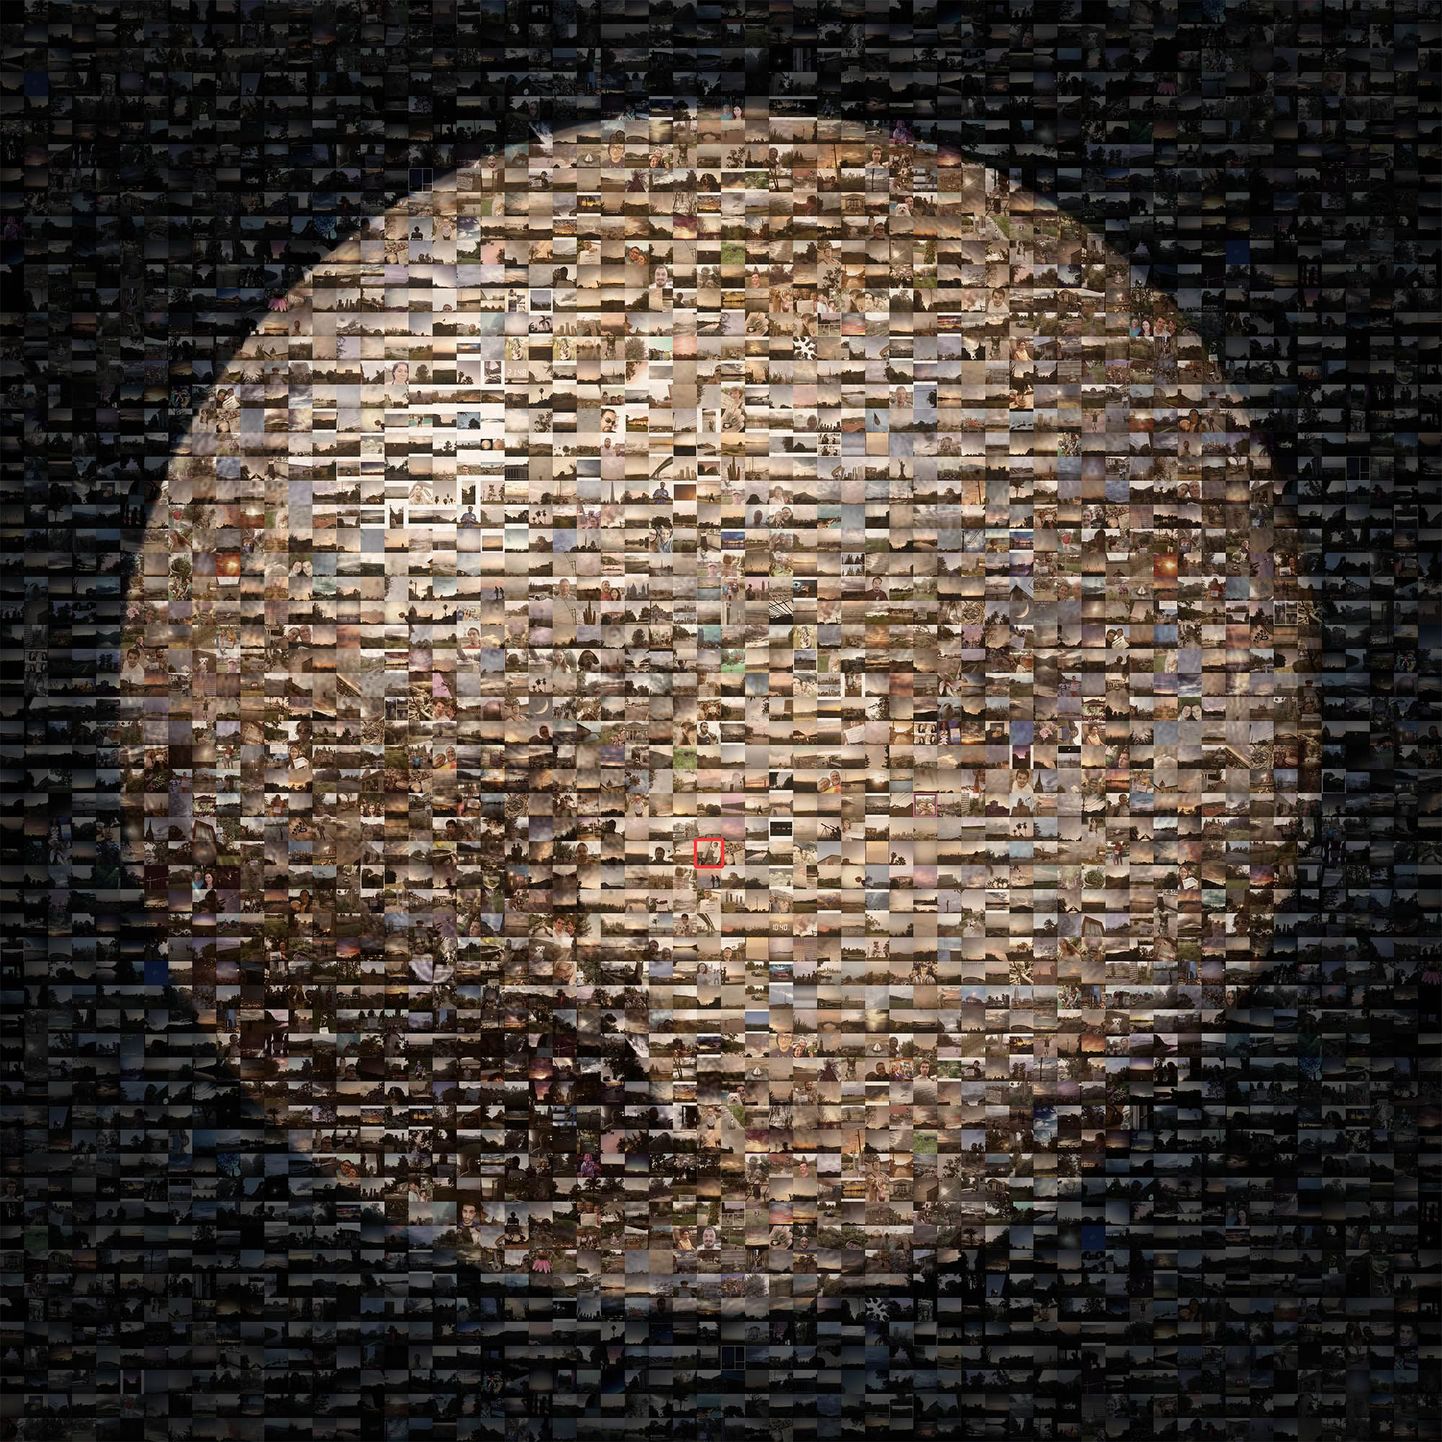 NASA Pluto Time kampaanias saadud fotodest mosaiik Pluutost